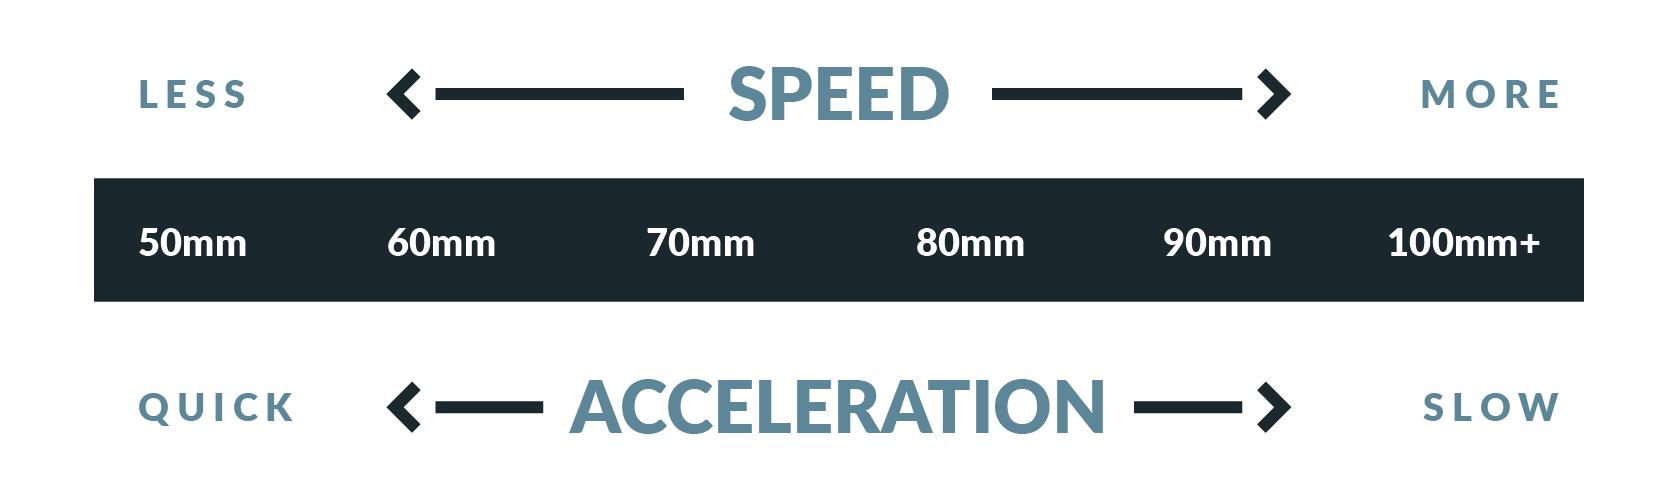 Comment le diamètre de la roue affecte la vitesse et l'accélération